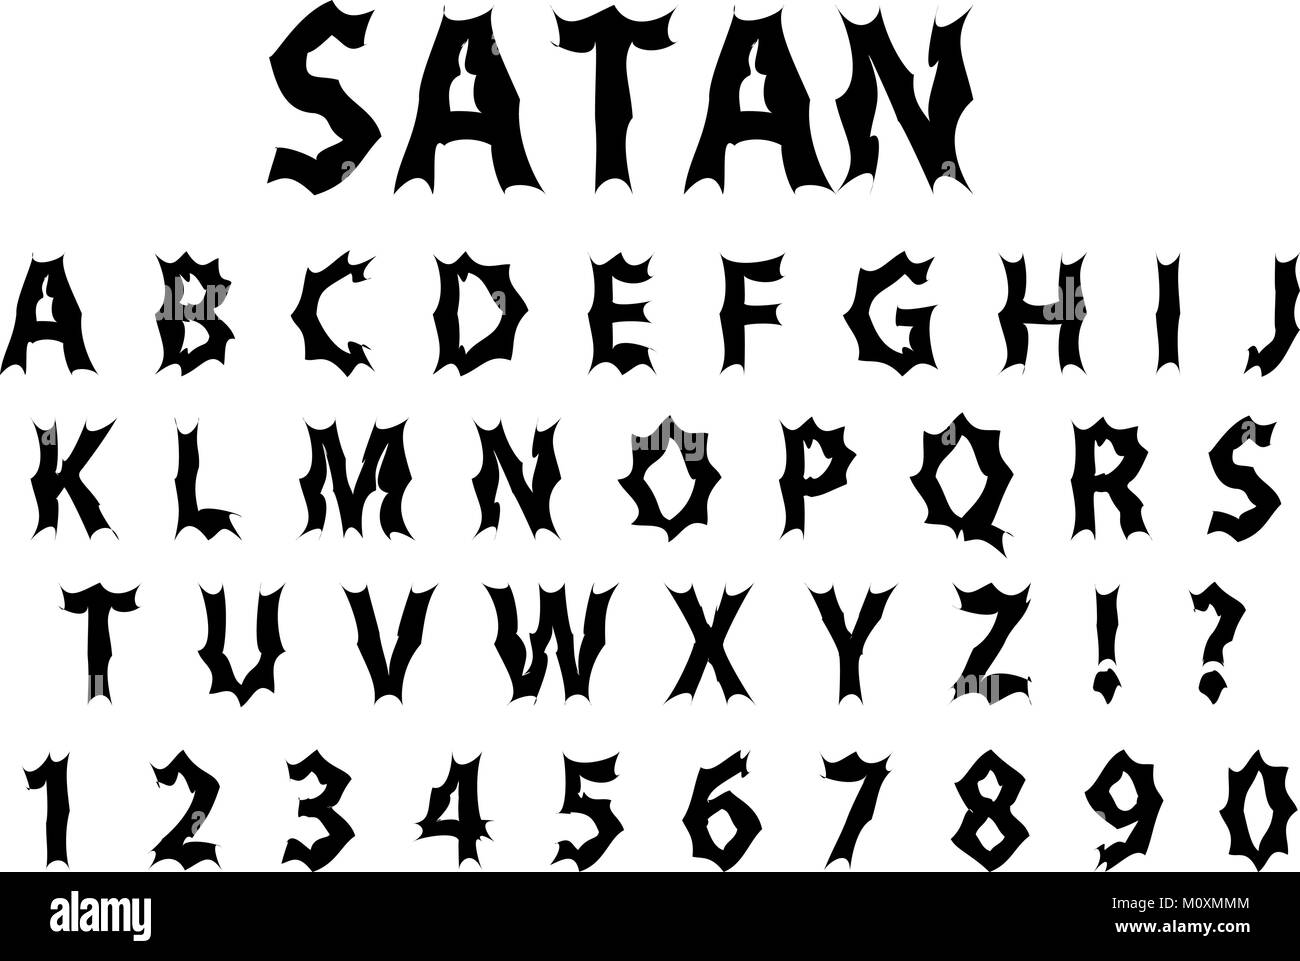 demonic font